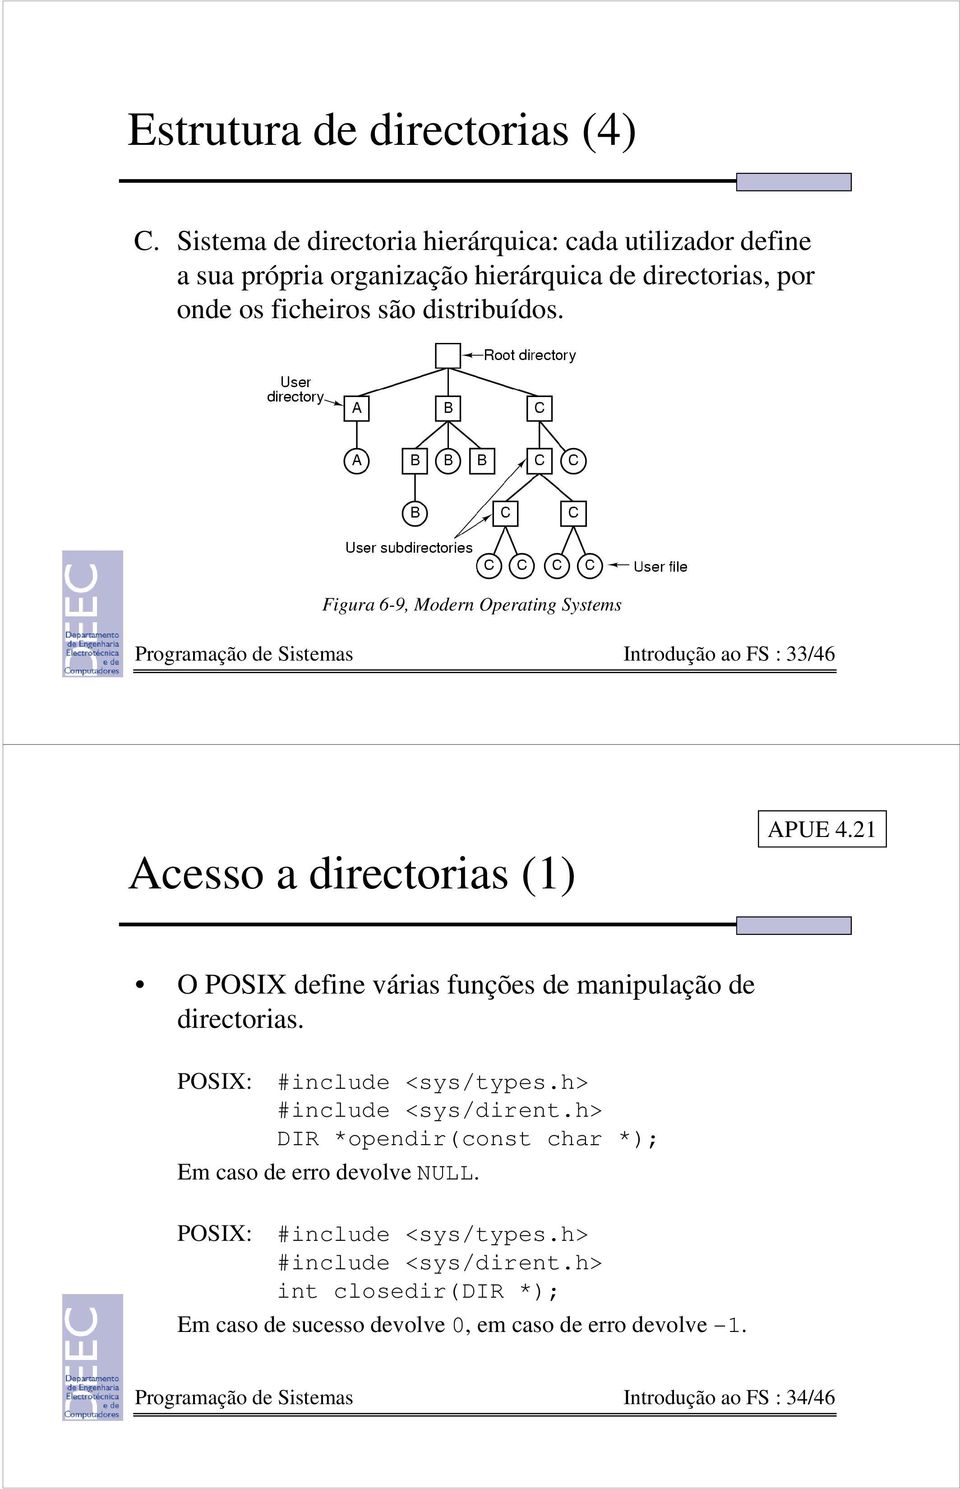 Figura 6-9, Modern Operating Systems Programação de Sistemas Introdução ao FS : 33/46 Acesso a directorias (1) APUE 4.